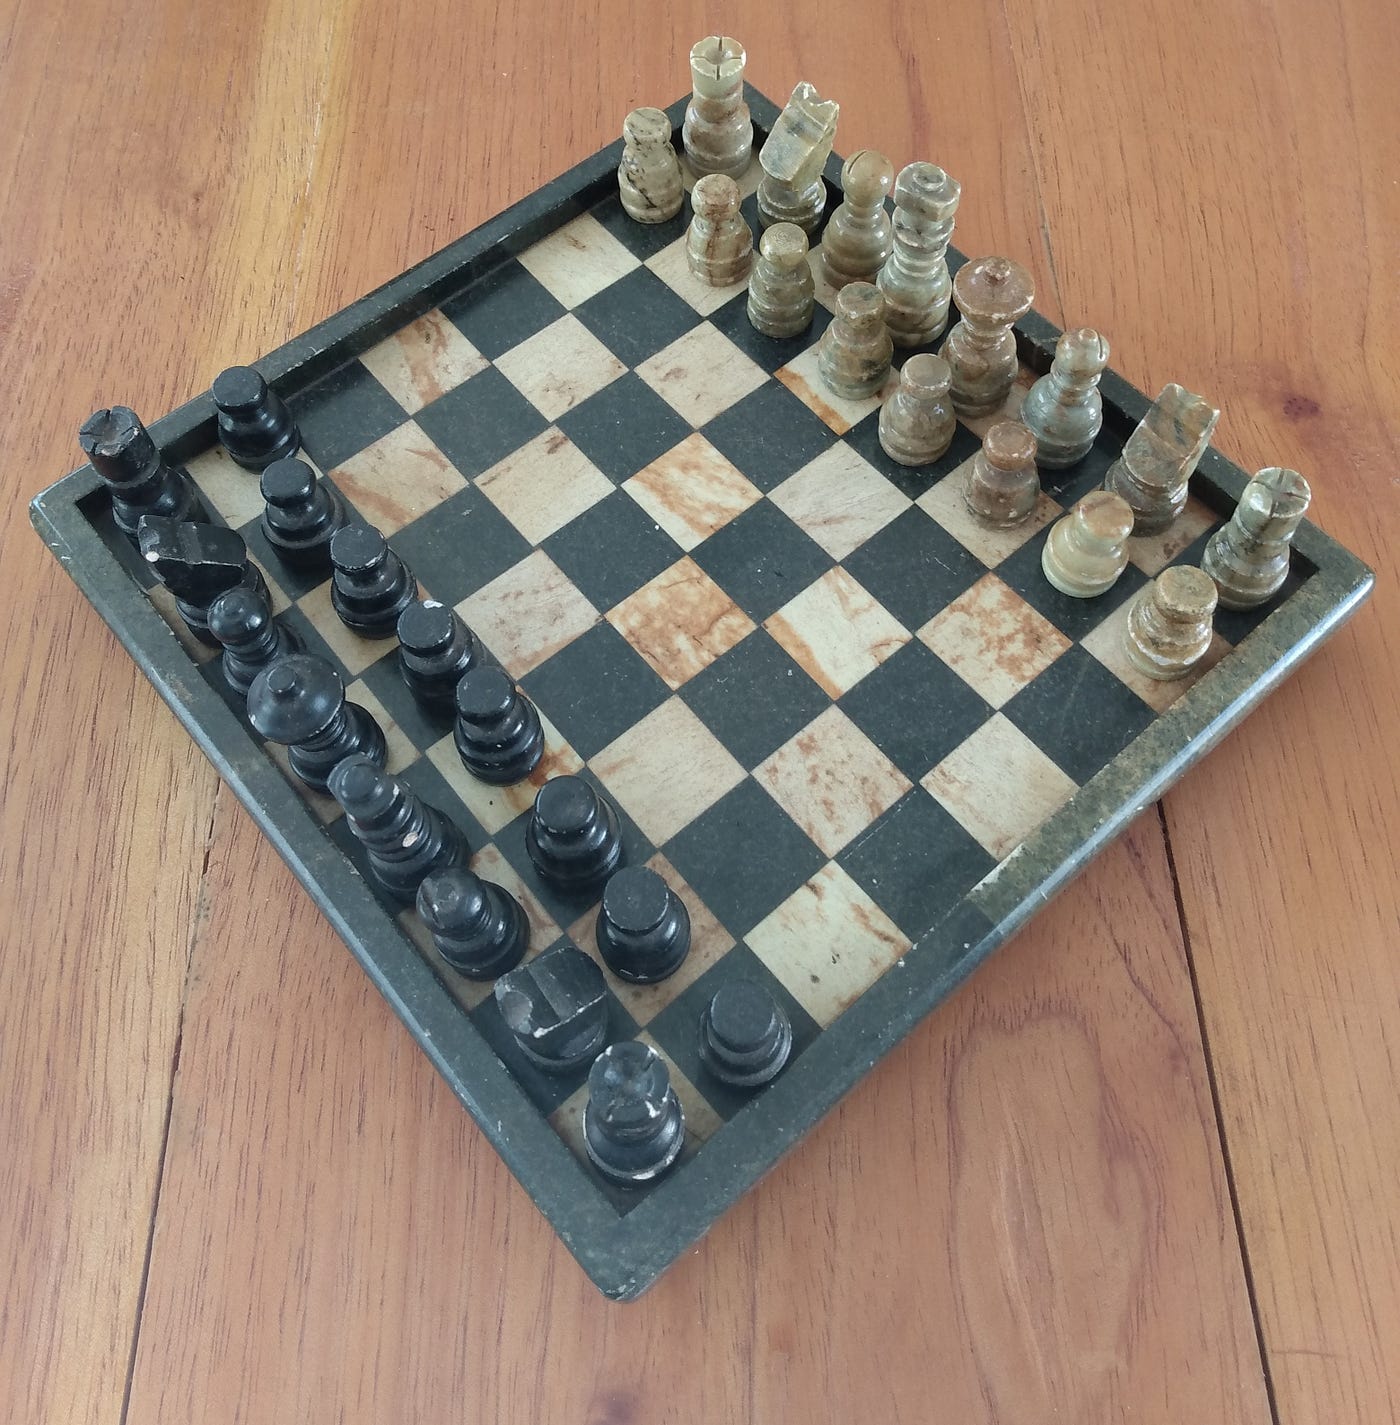 Os peões são a alma do xadrez